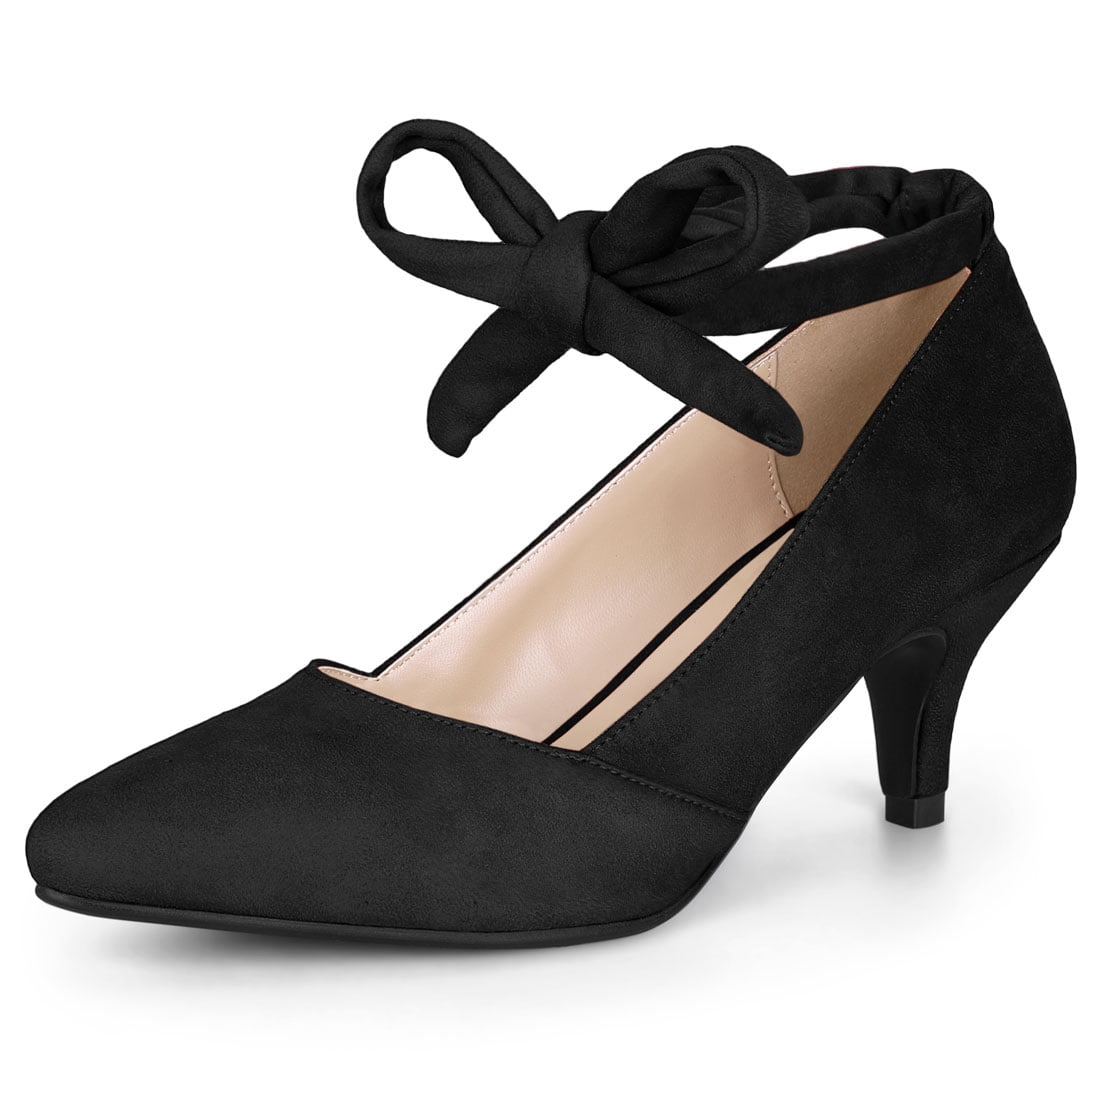 Women's Pointed Toe Lace Up Kitten Heel Pumps Black US 8 | Walmart Canada